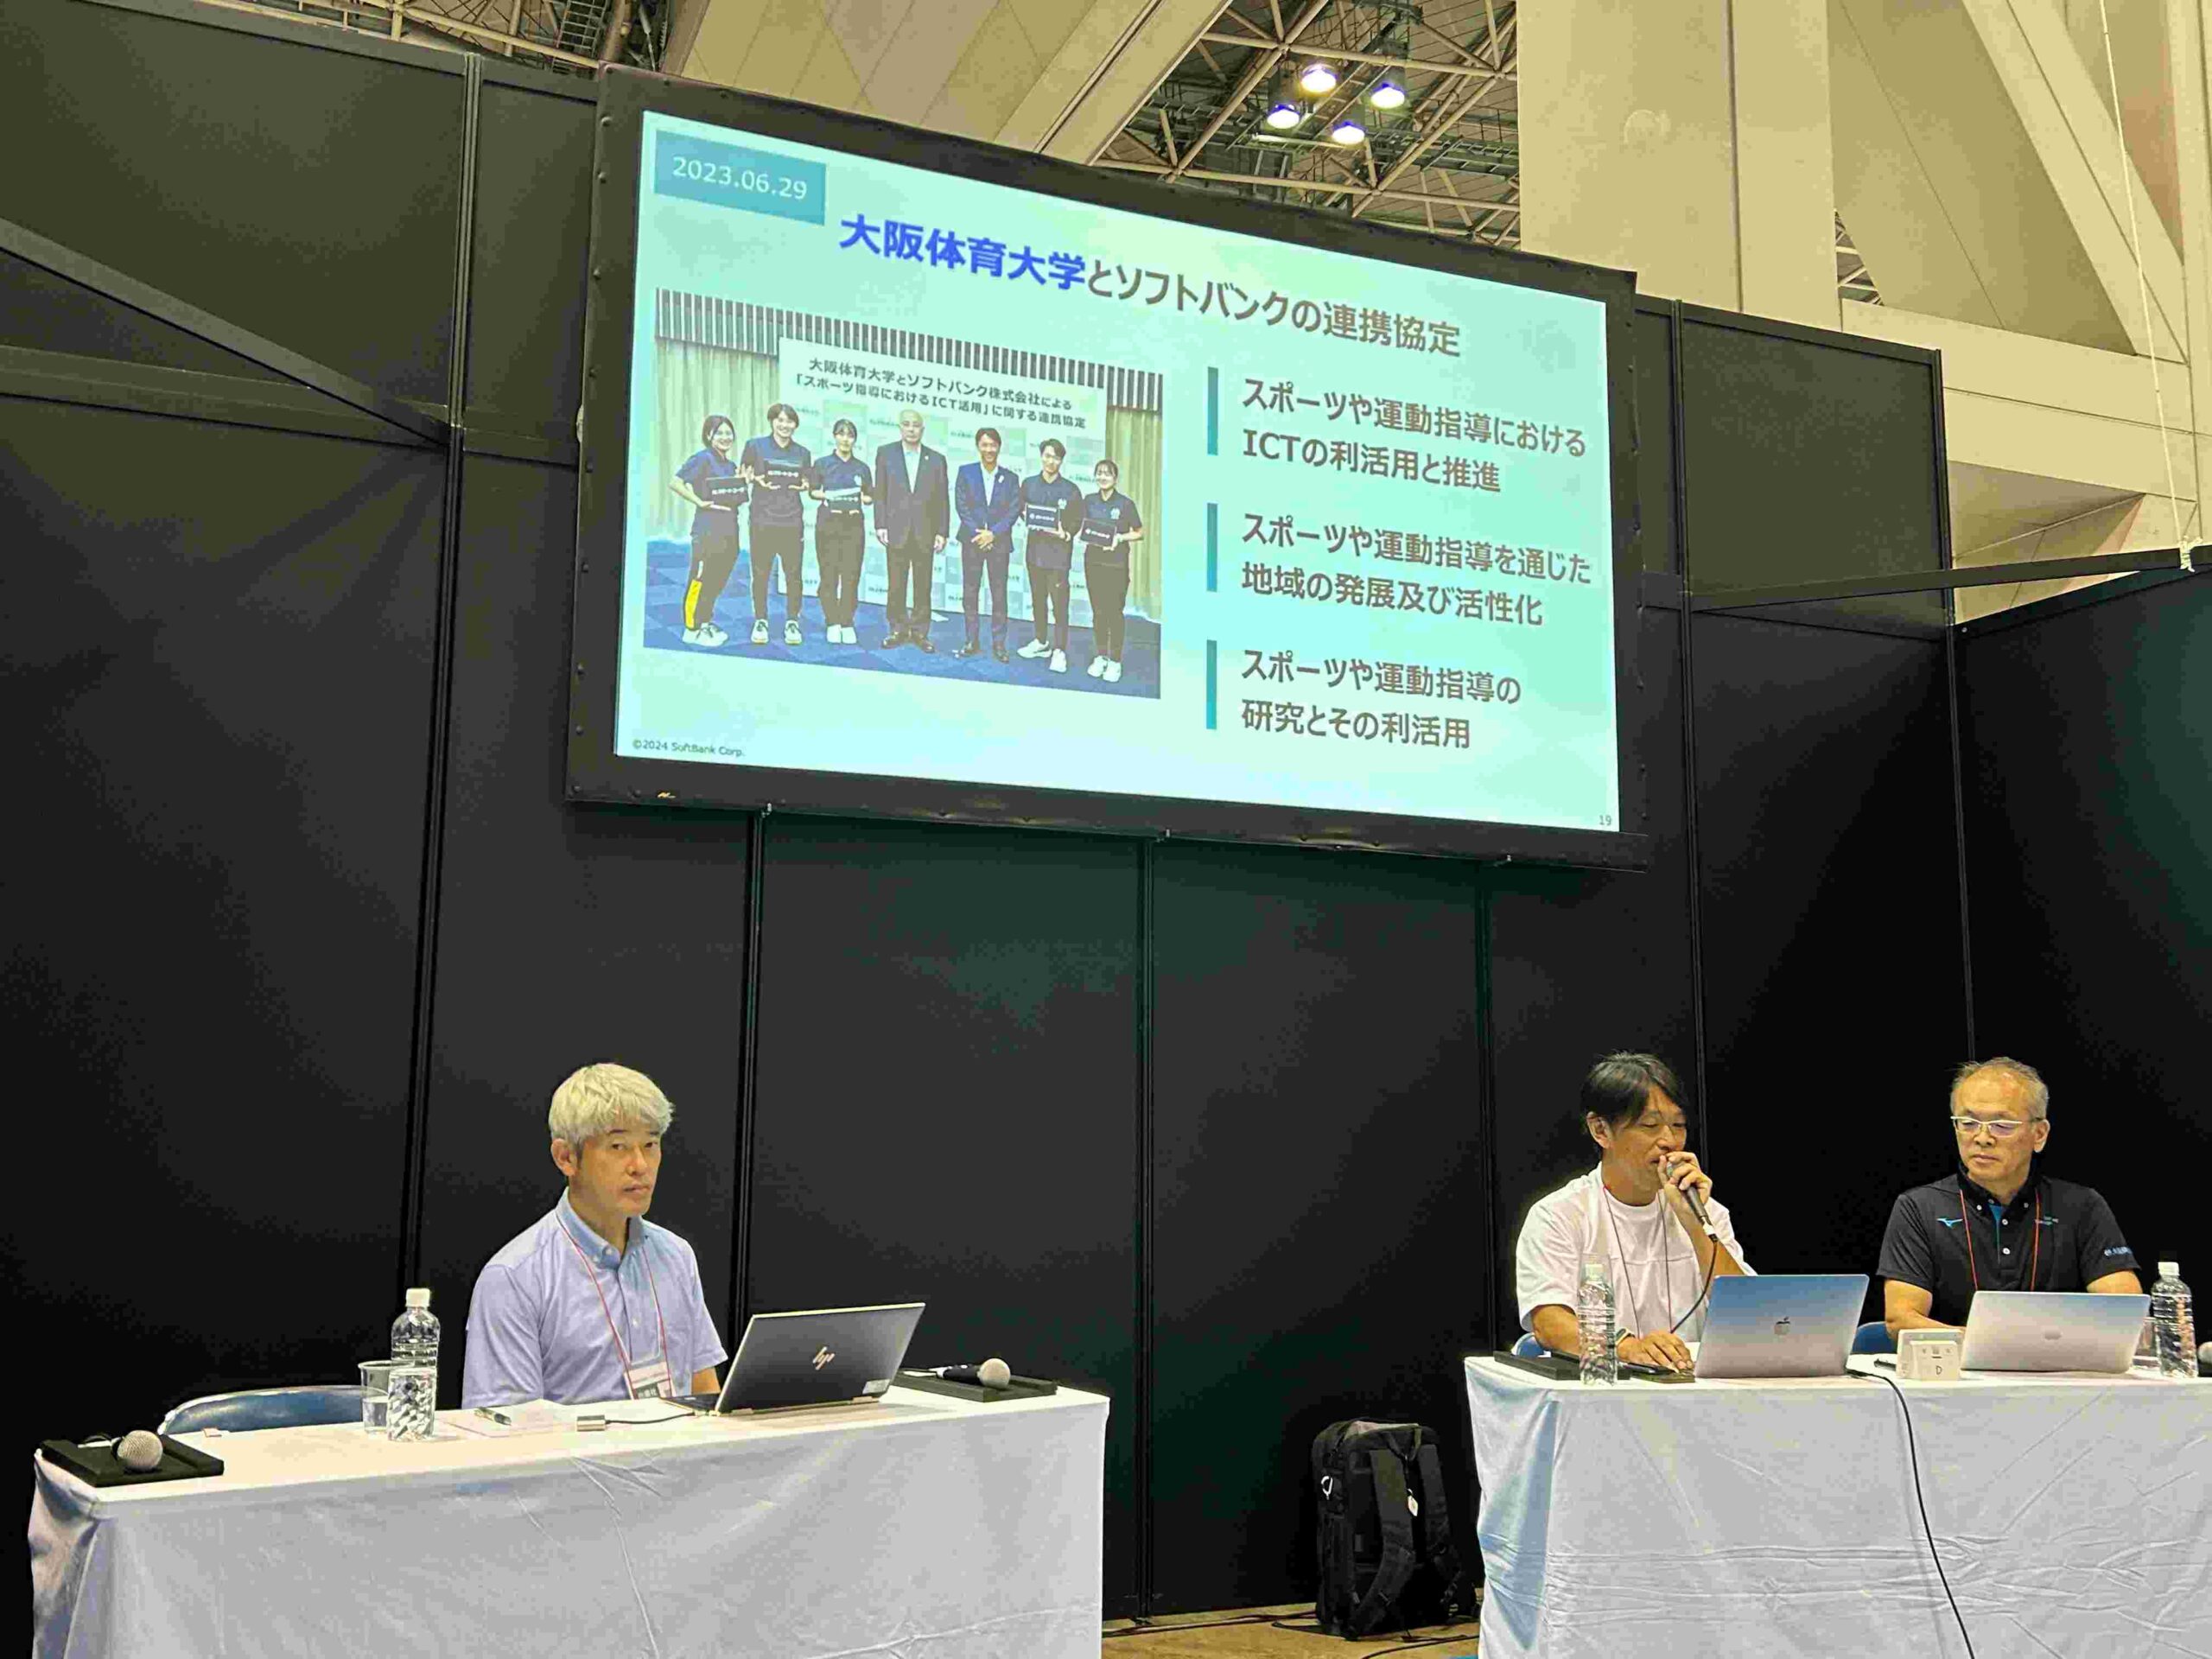 SPORTEC大阪体育大学セミナー「スポーツ科学でビジネスする」